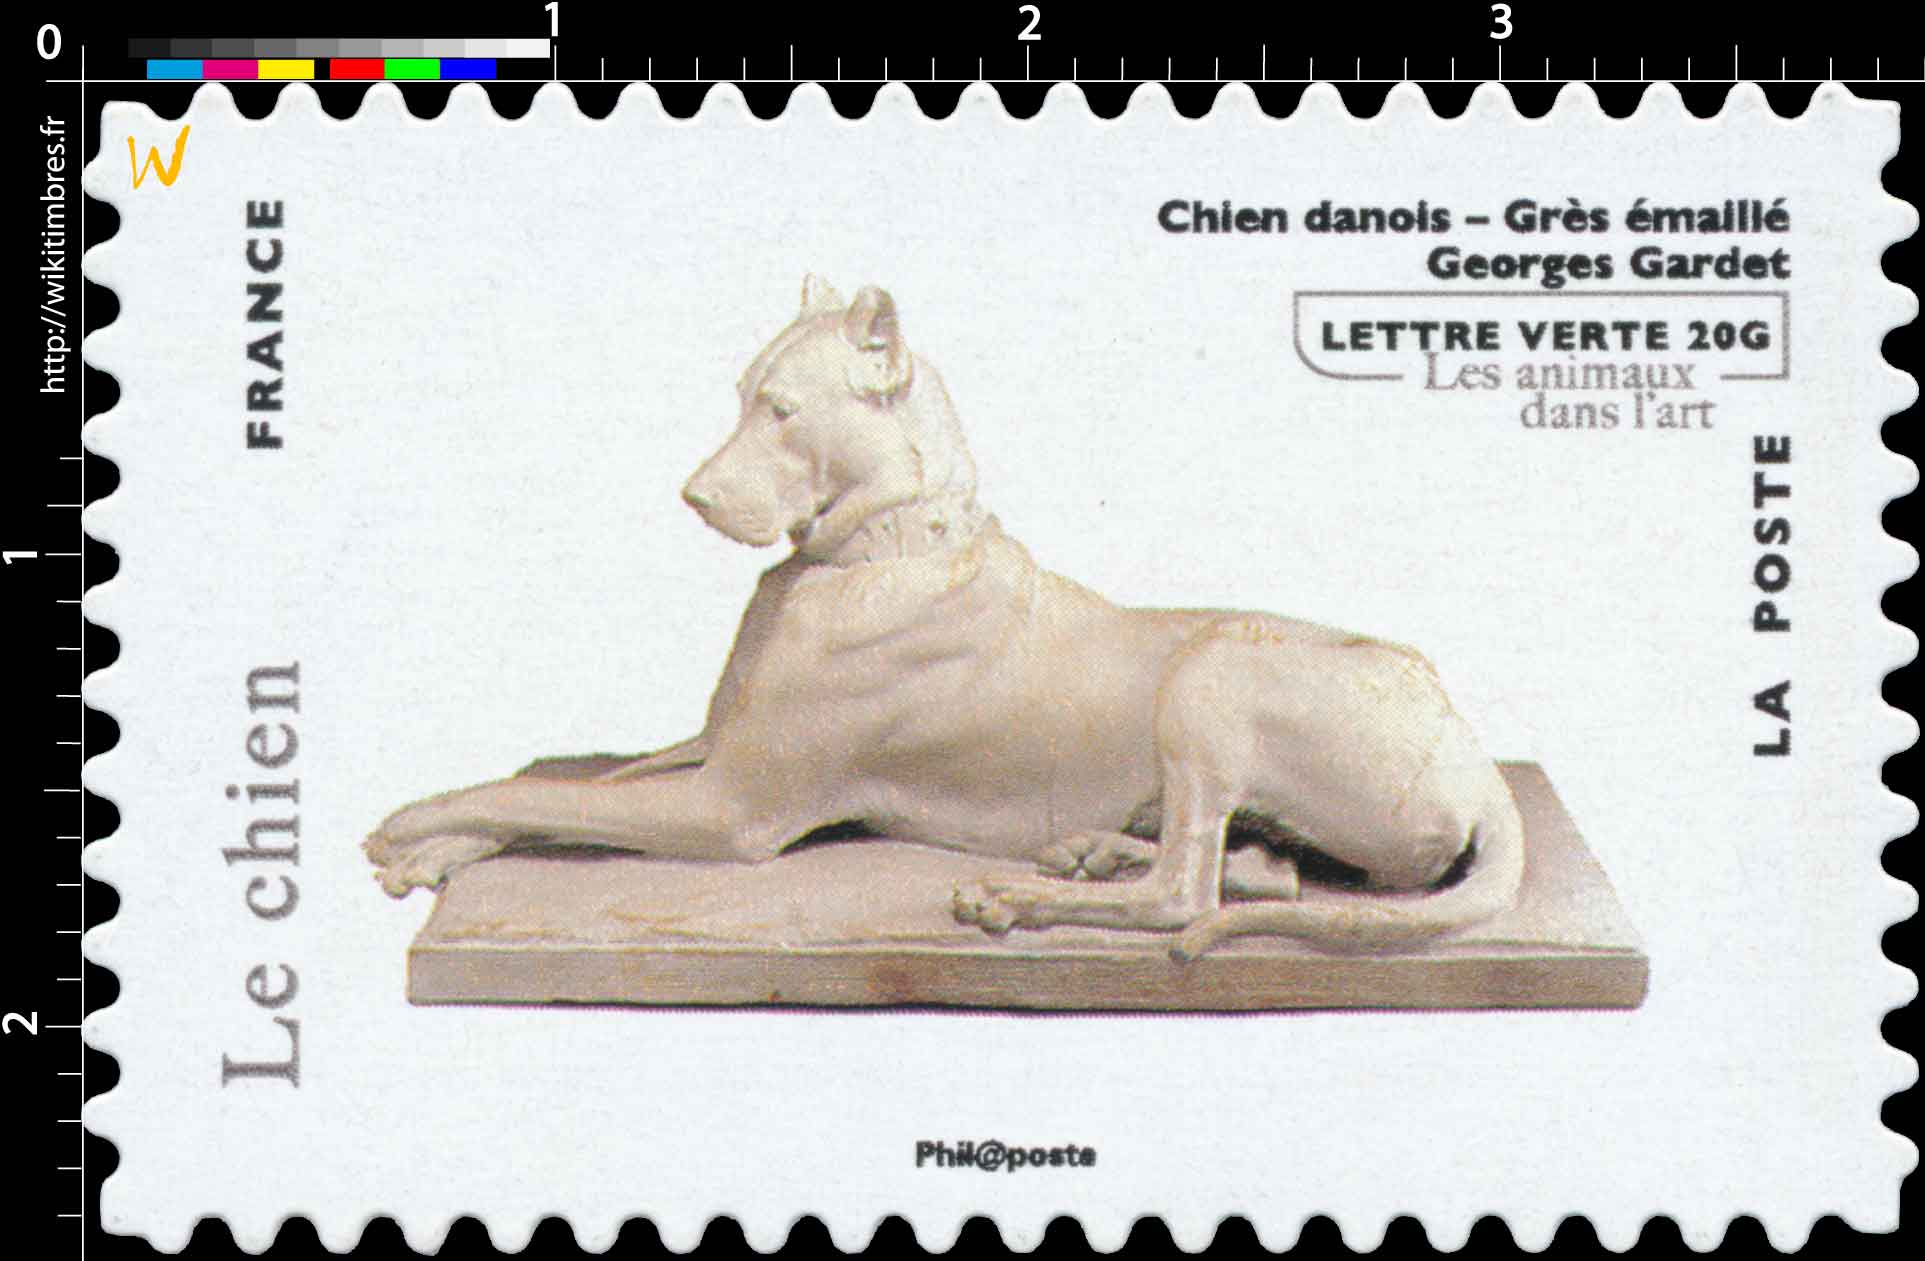 Le chien - Chien danois - Grès émaillé - Georges Gardet - Les animaux dans l'art